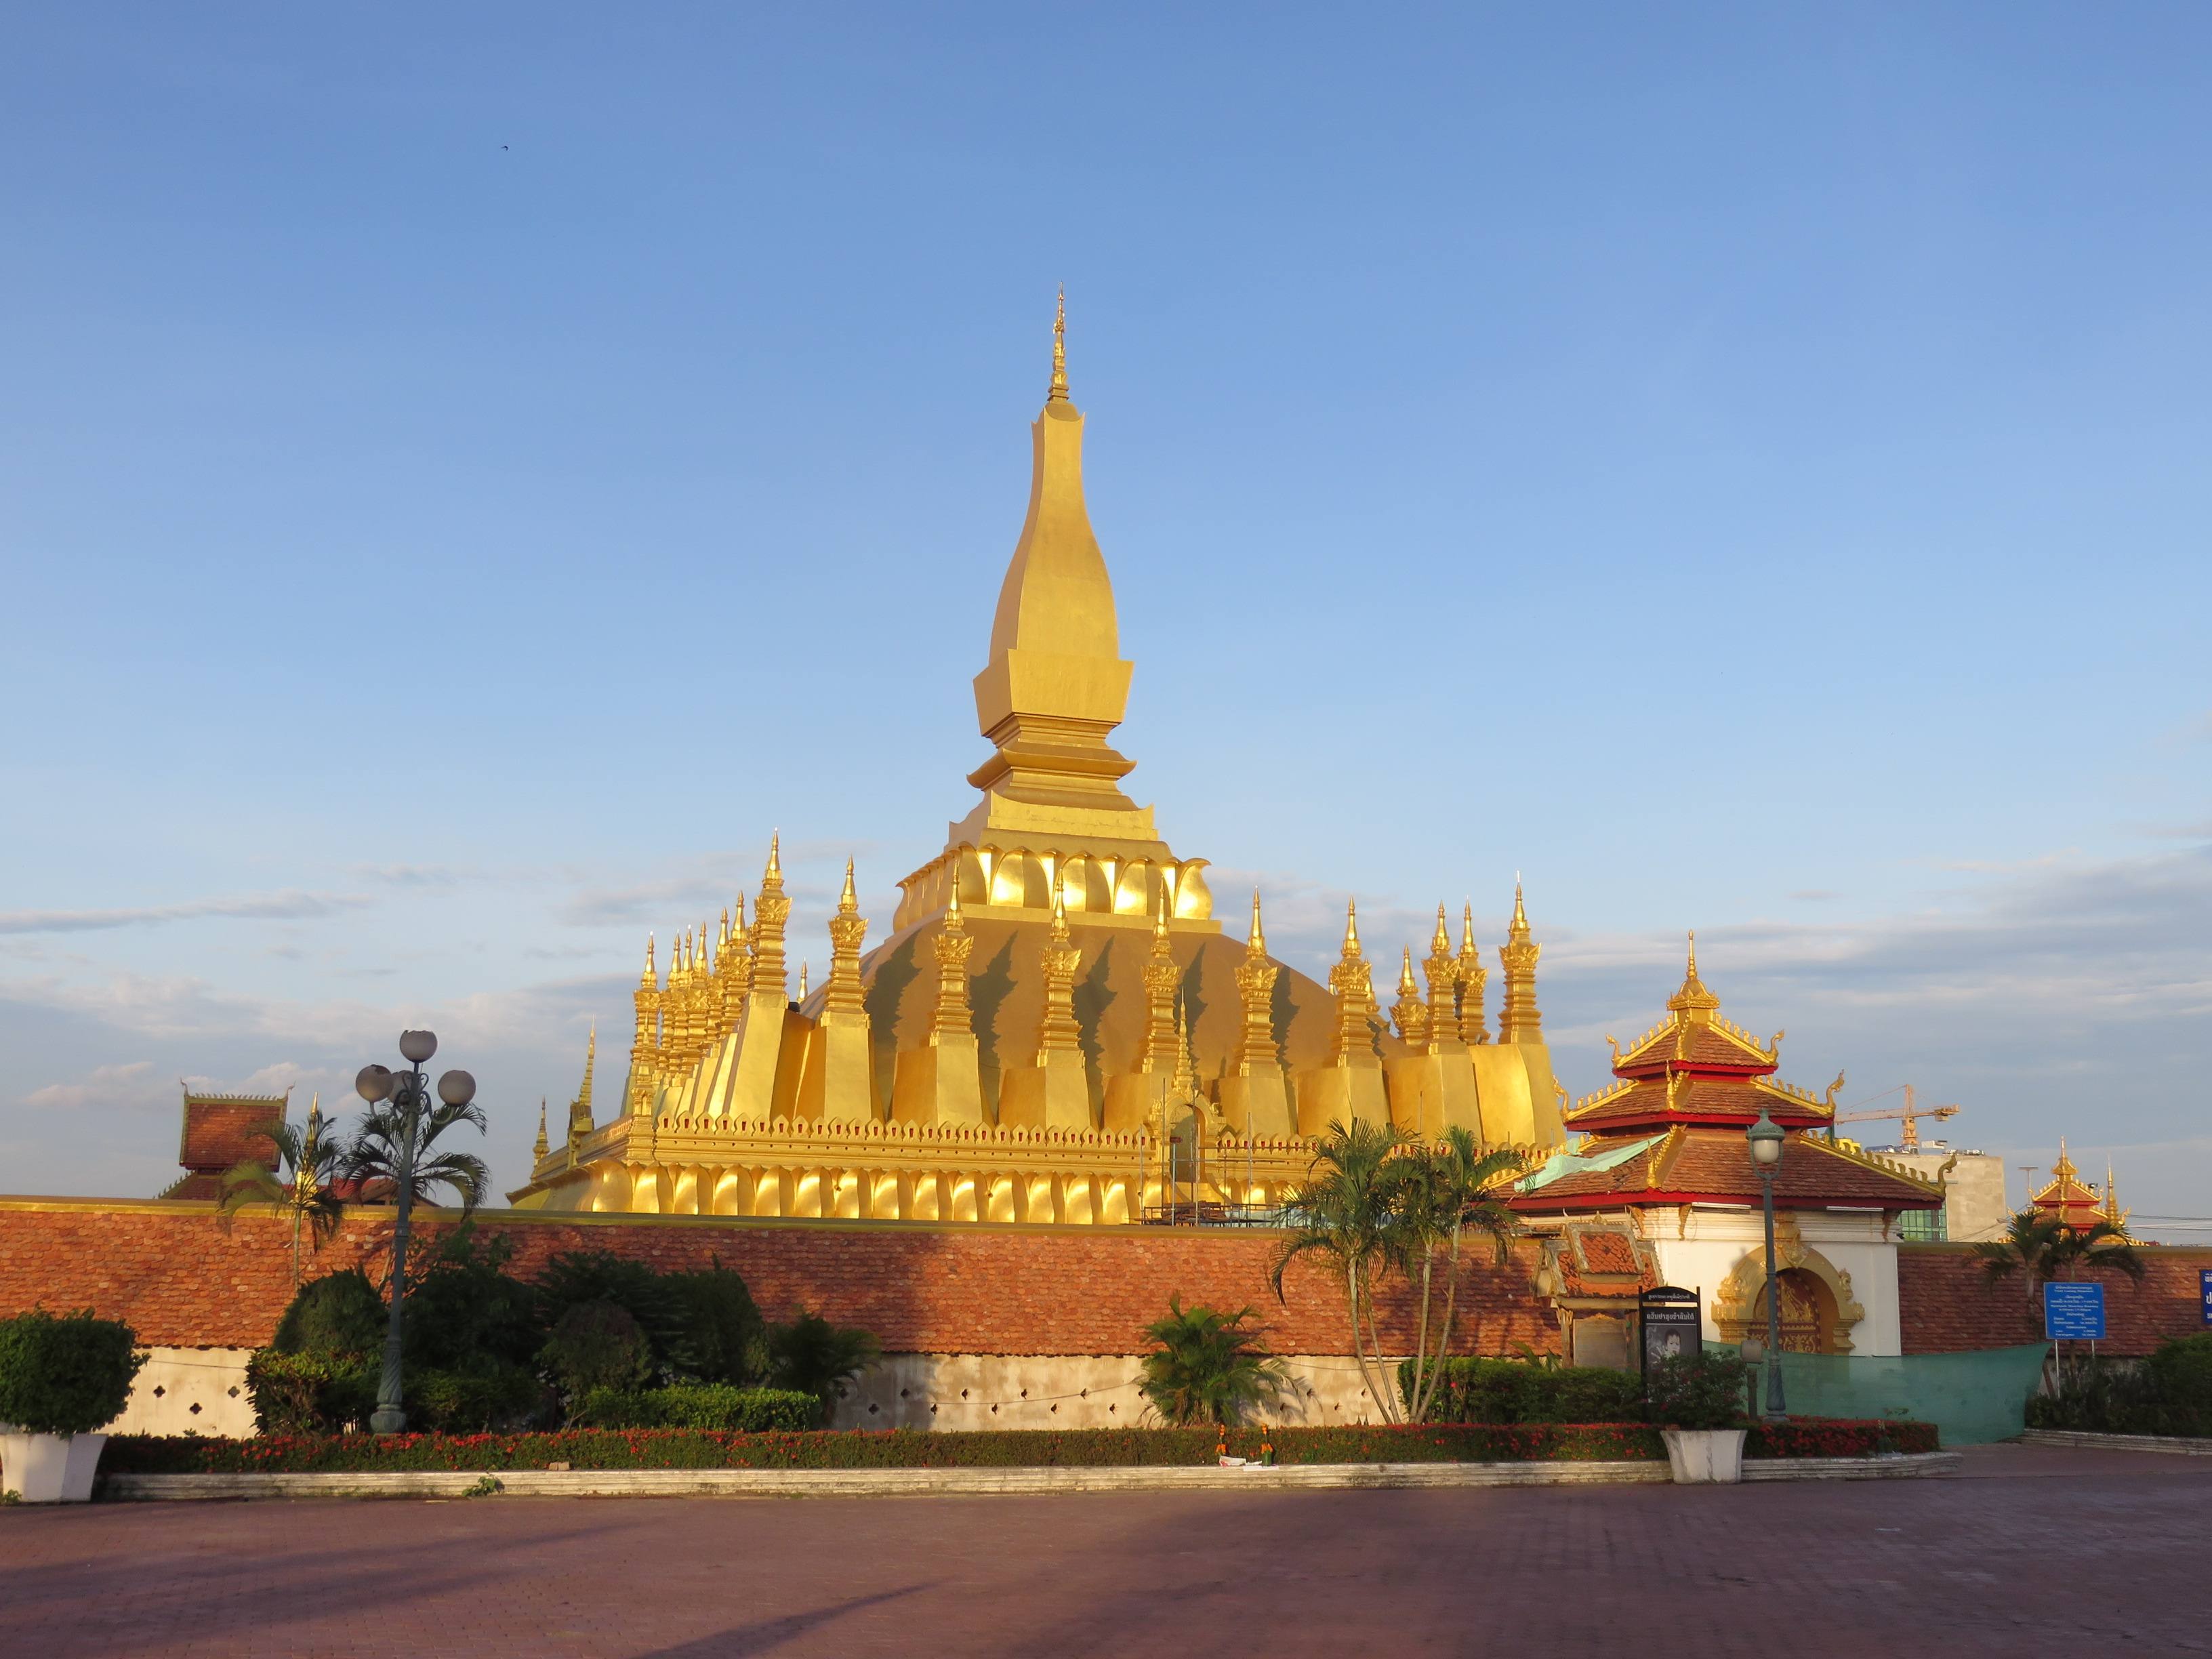 【携程攻略】万象大佛塔景点,老挝国徽上有大佛塔主塔，万象标志性的建筑之一，大金塔在蓝天下挺壮…